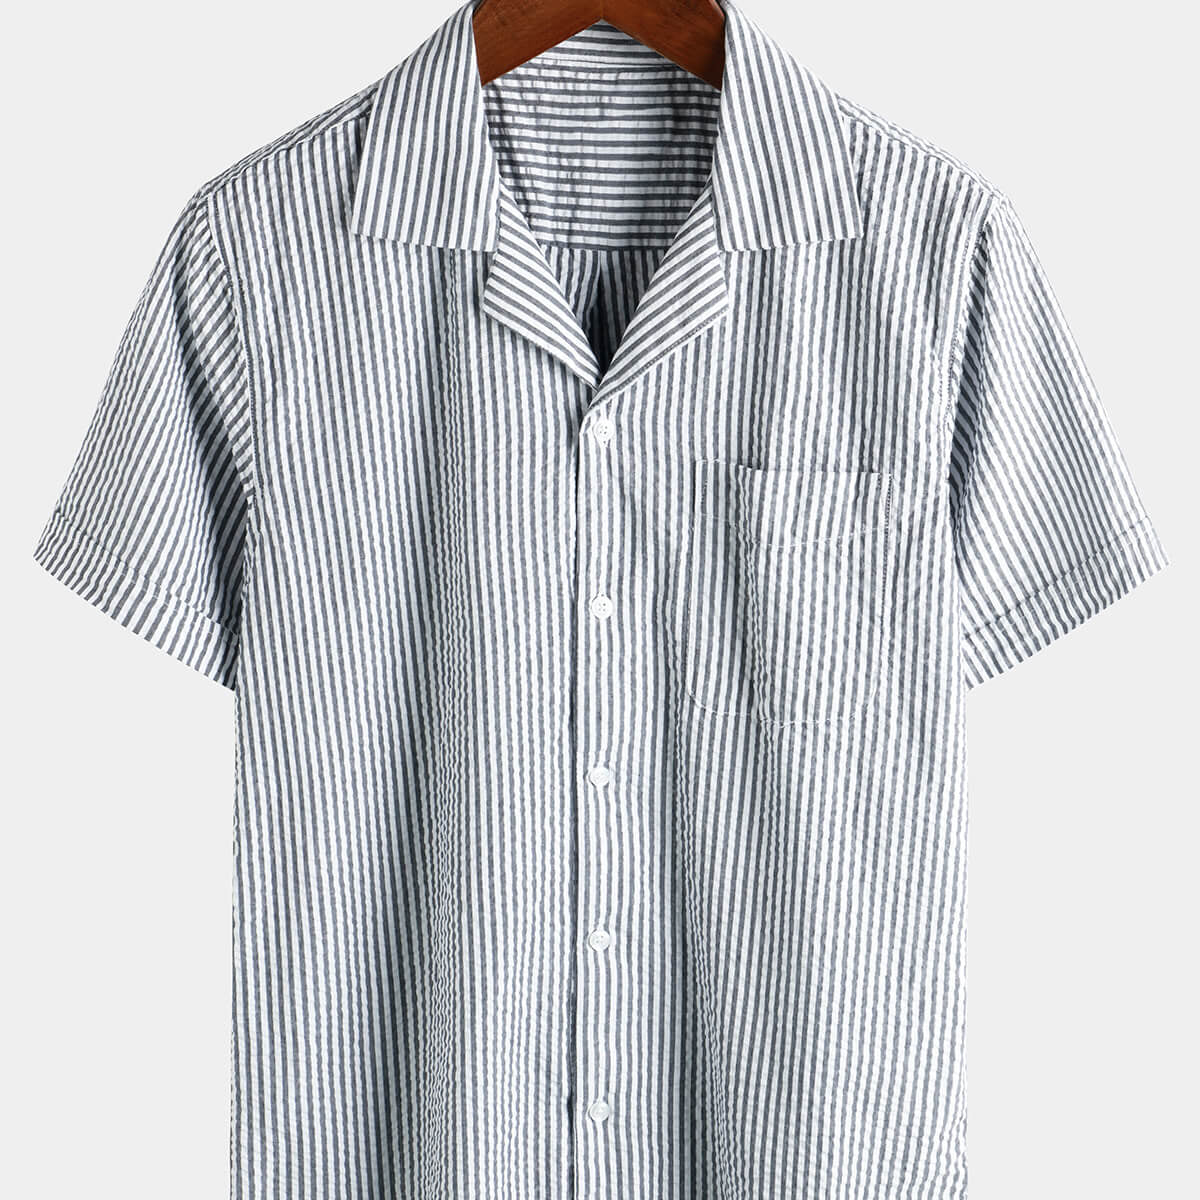 Camisa de playa de manga corta para campamento con cuello cubano de verano con botones de algodón a rayas transpirable para hombre